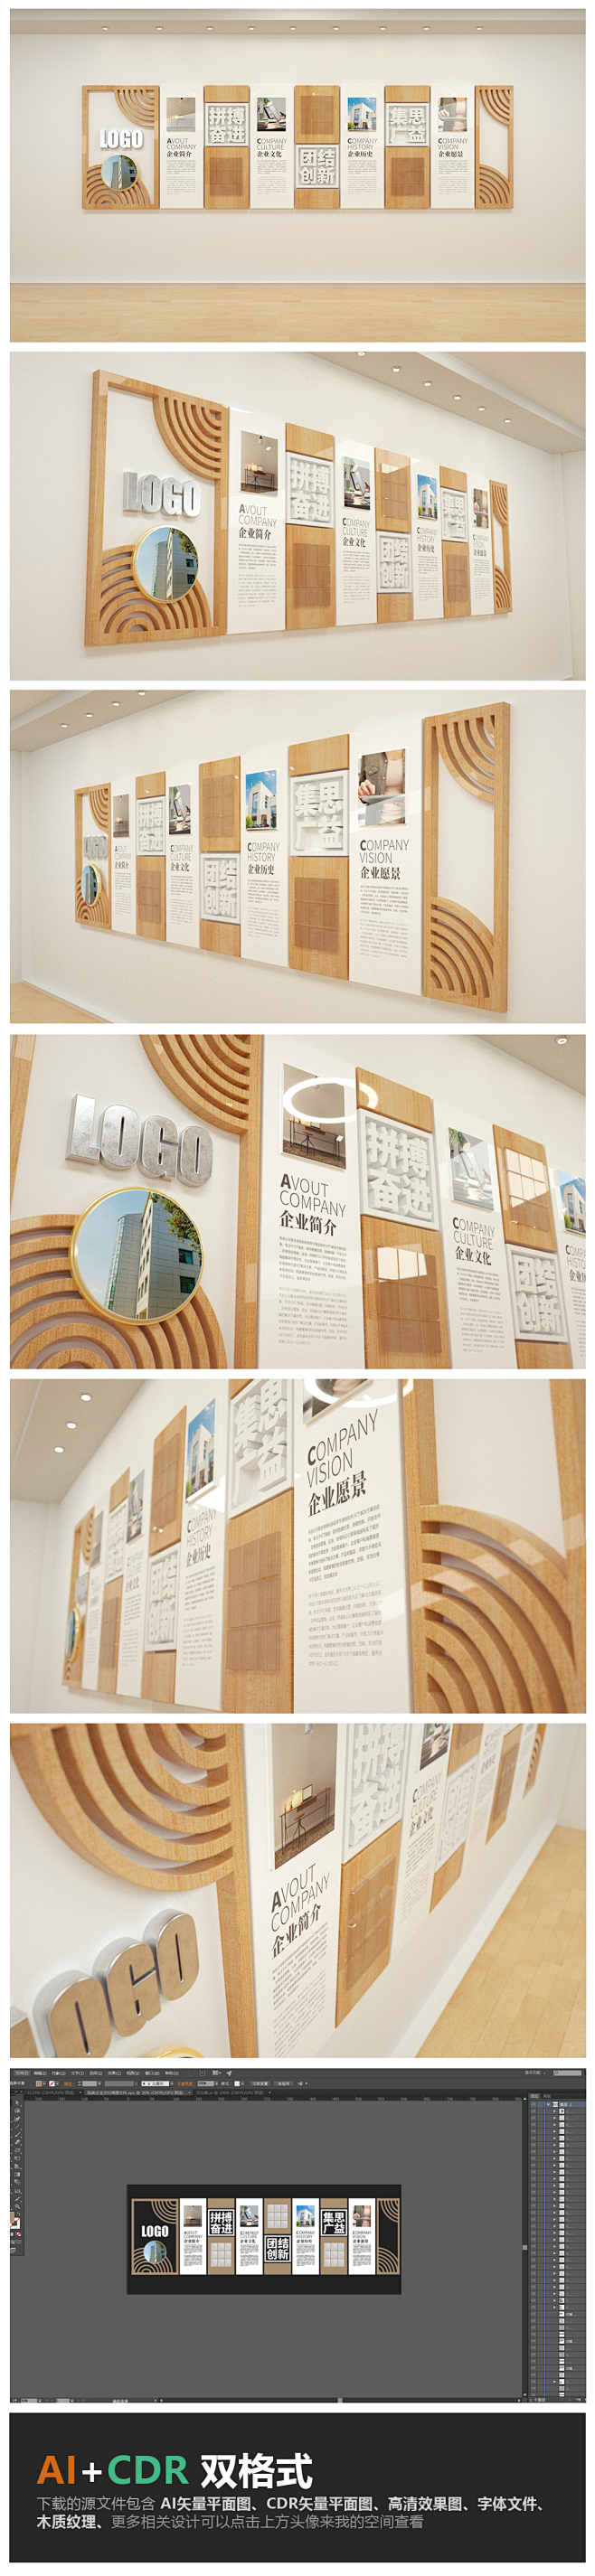 简约木质教育企业文化墙公司形象墙设计模板...